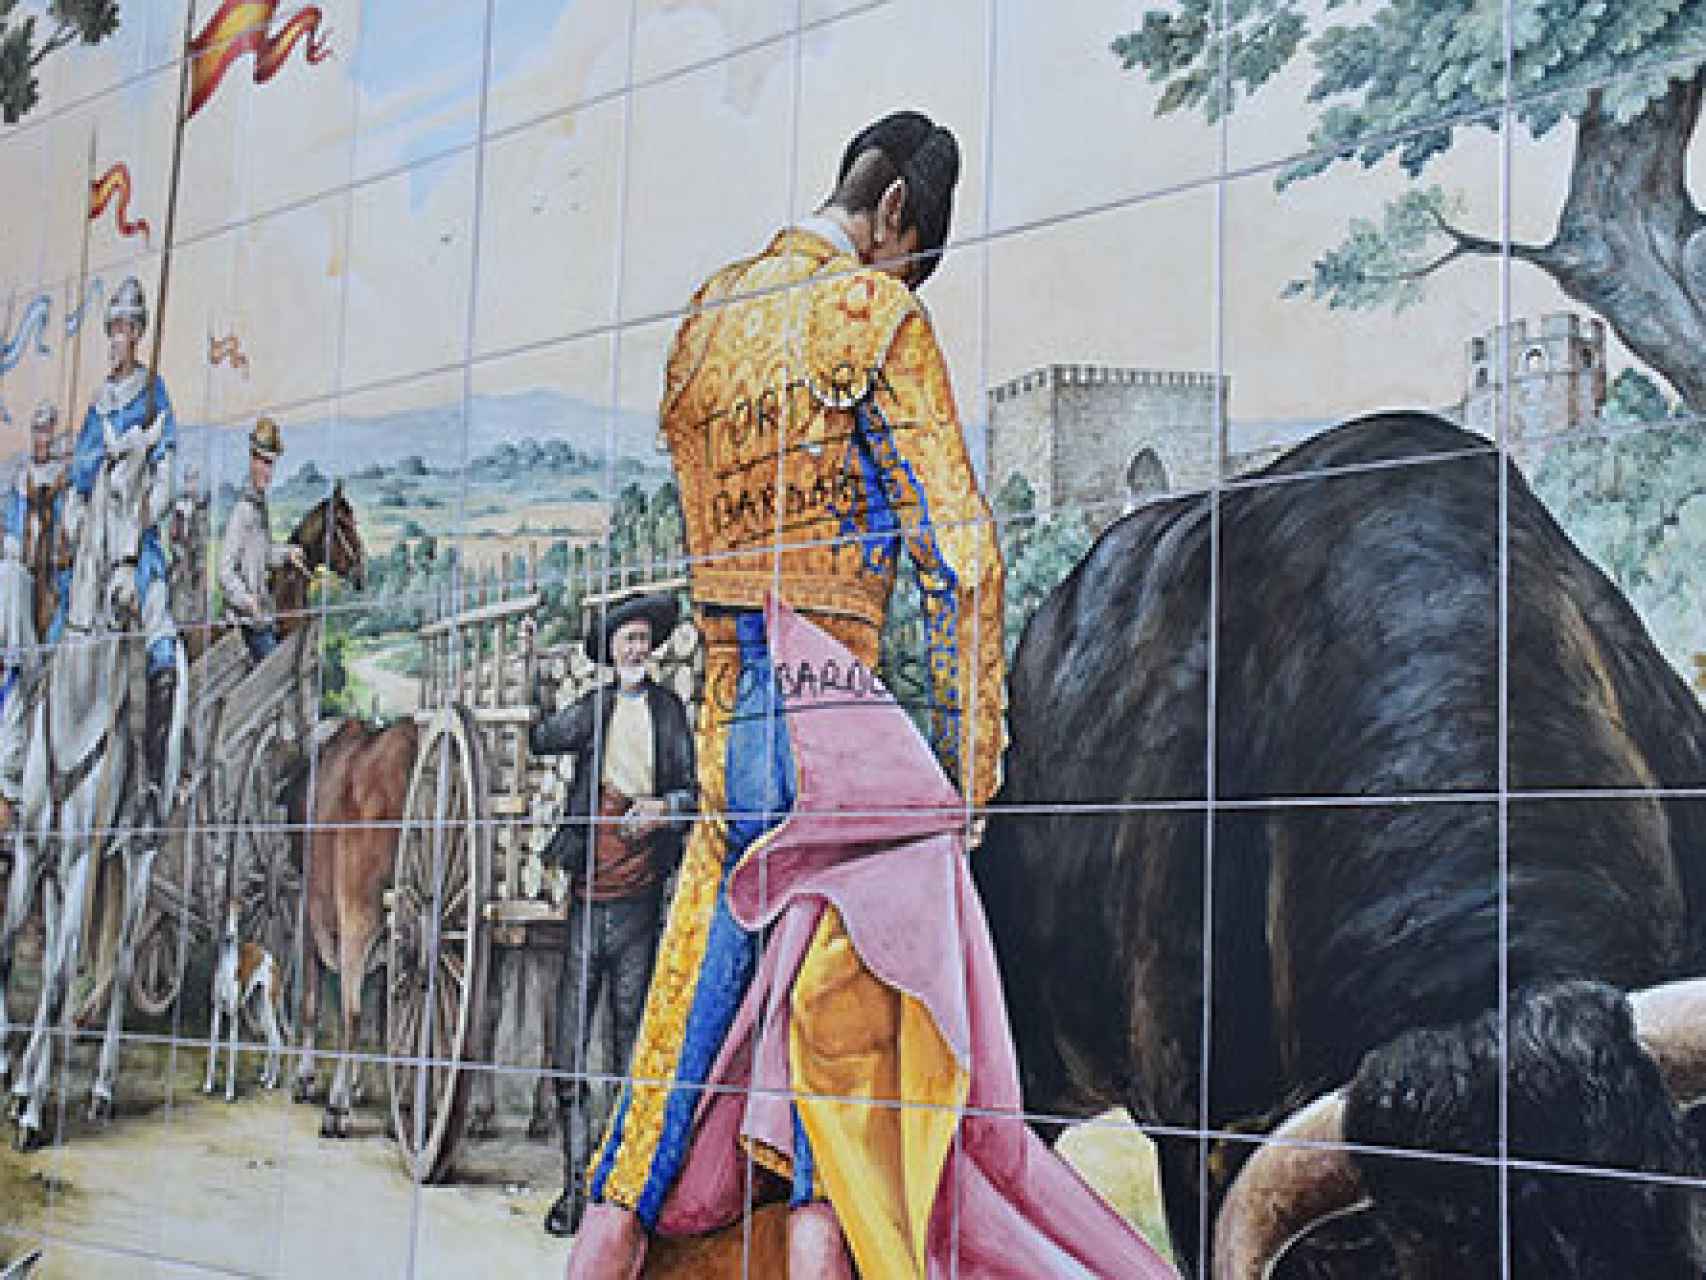 Acto vandálico en un mural cerámico de Talavera.